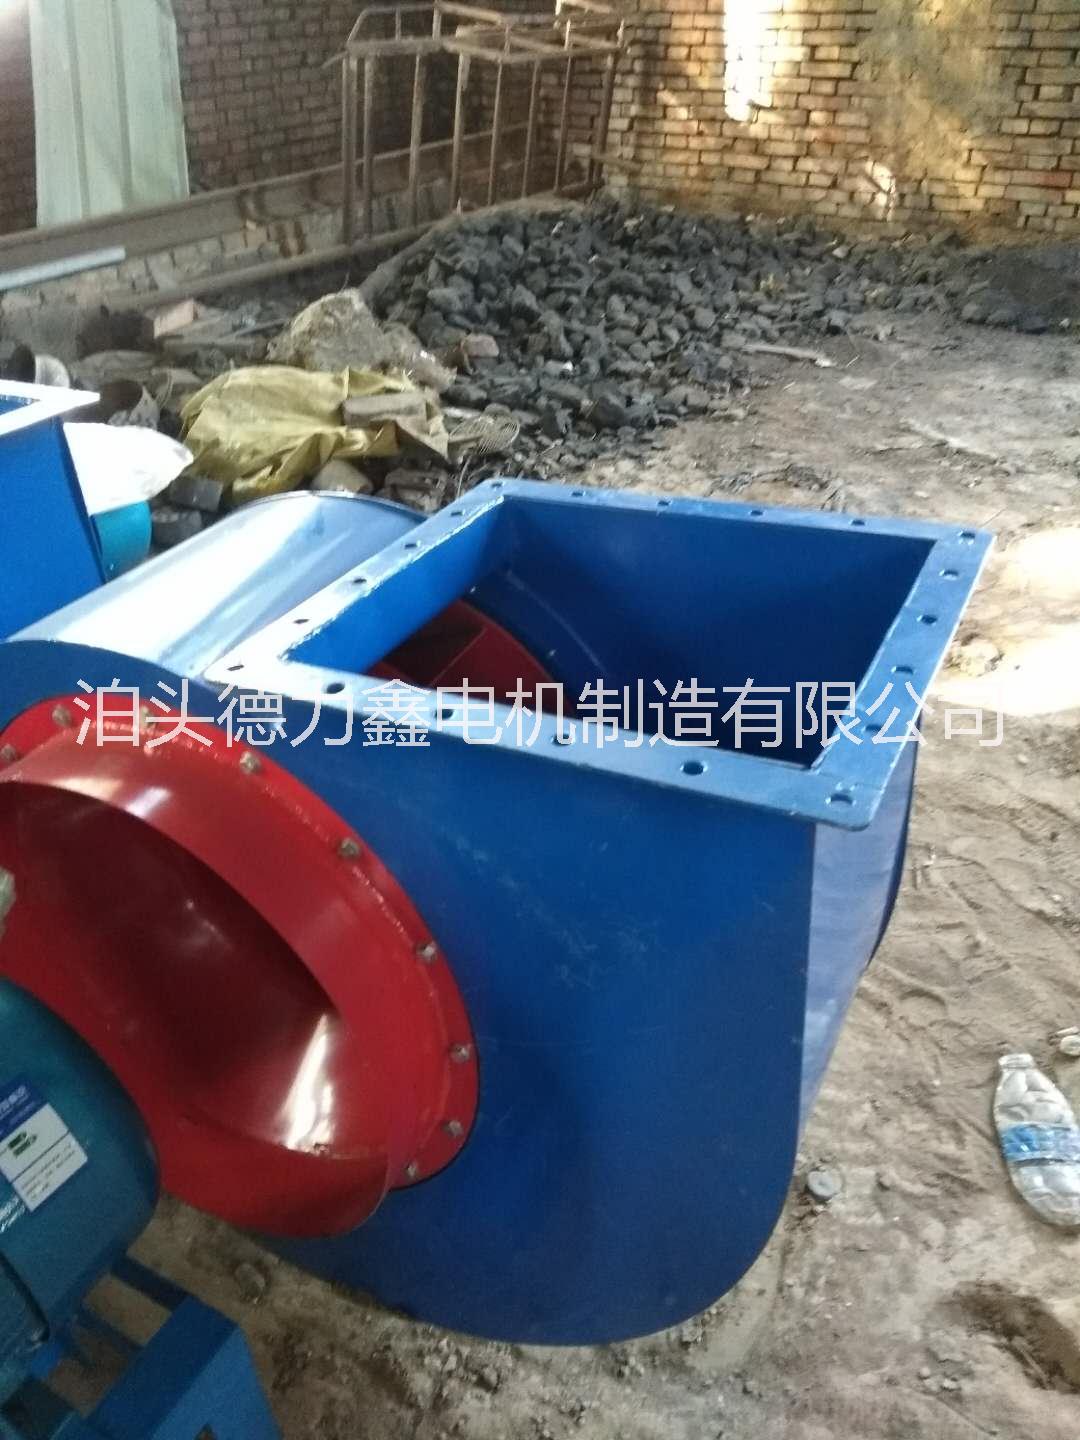 河北沧州泊头电机厂家供应4-72-2.8A1.5kw风机除尘光氧离心通风机铜包电机